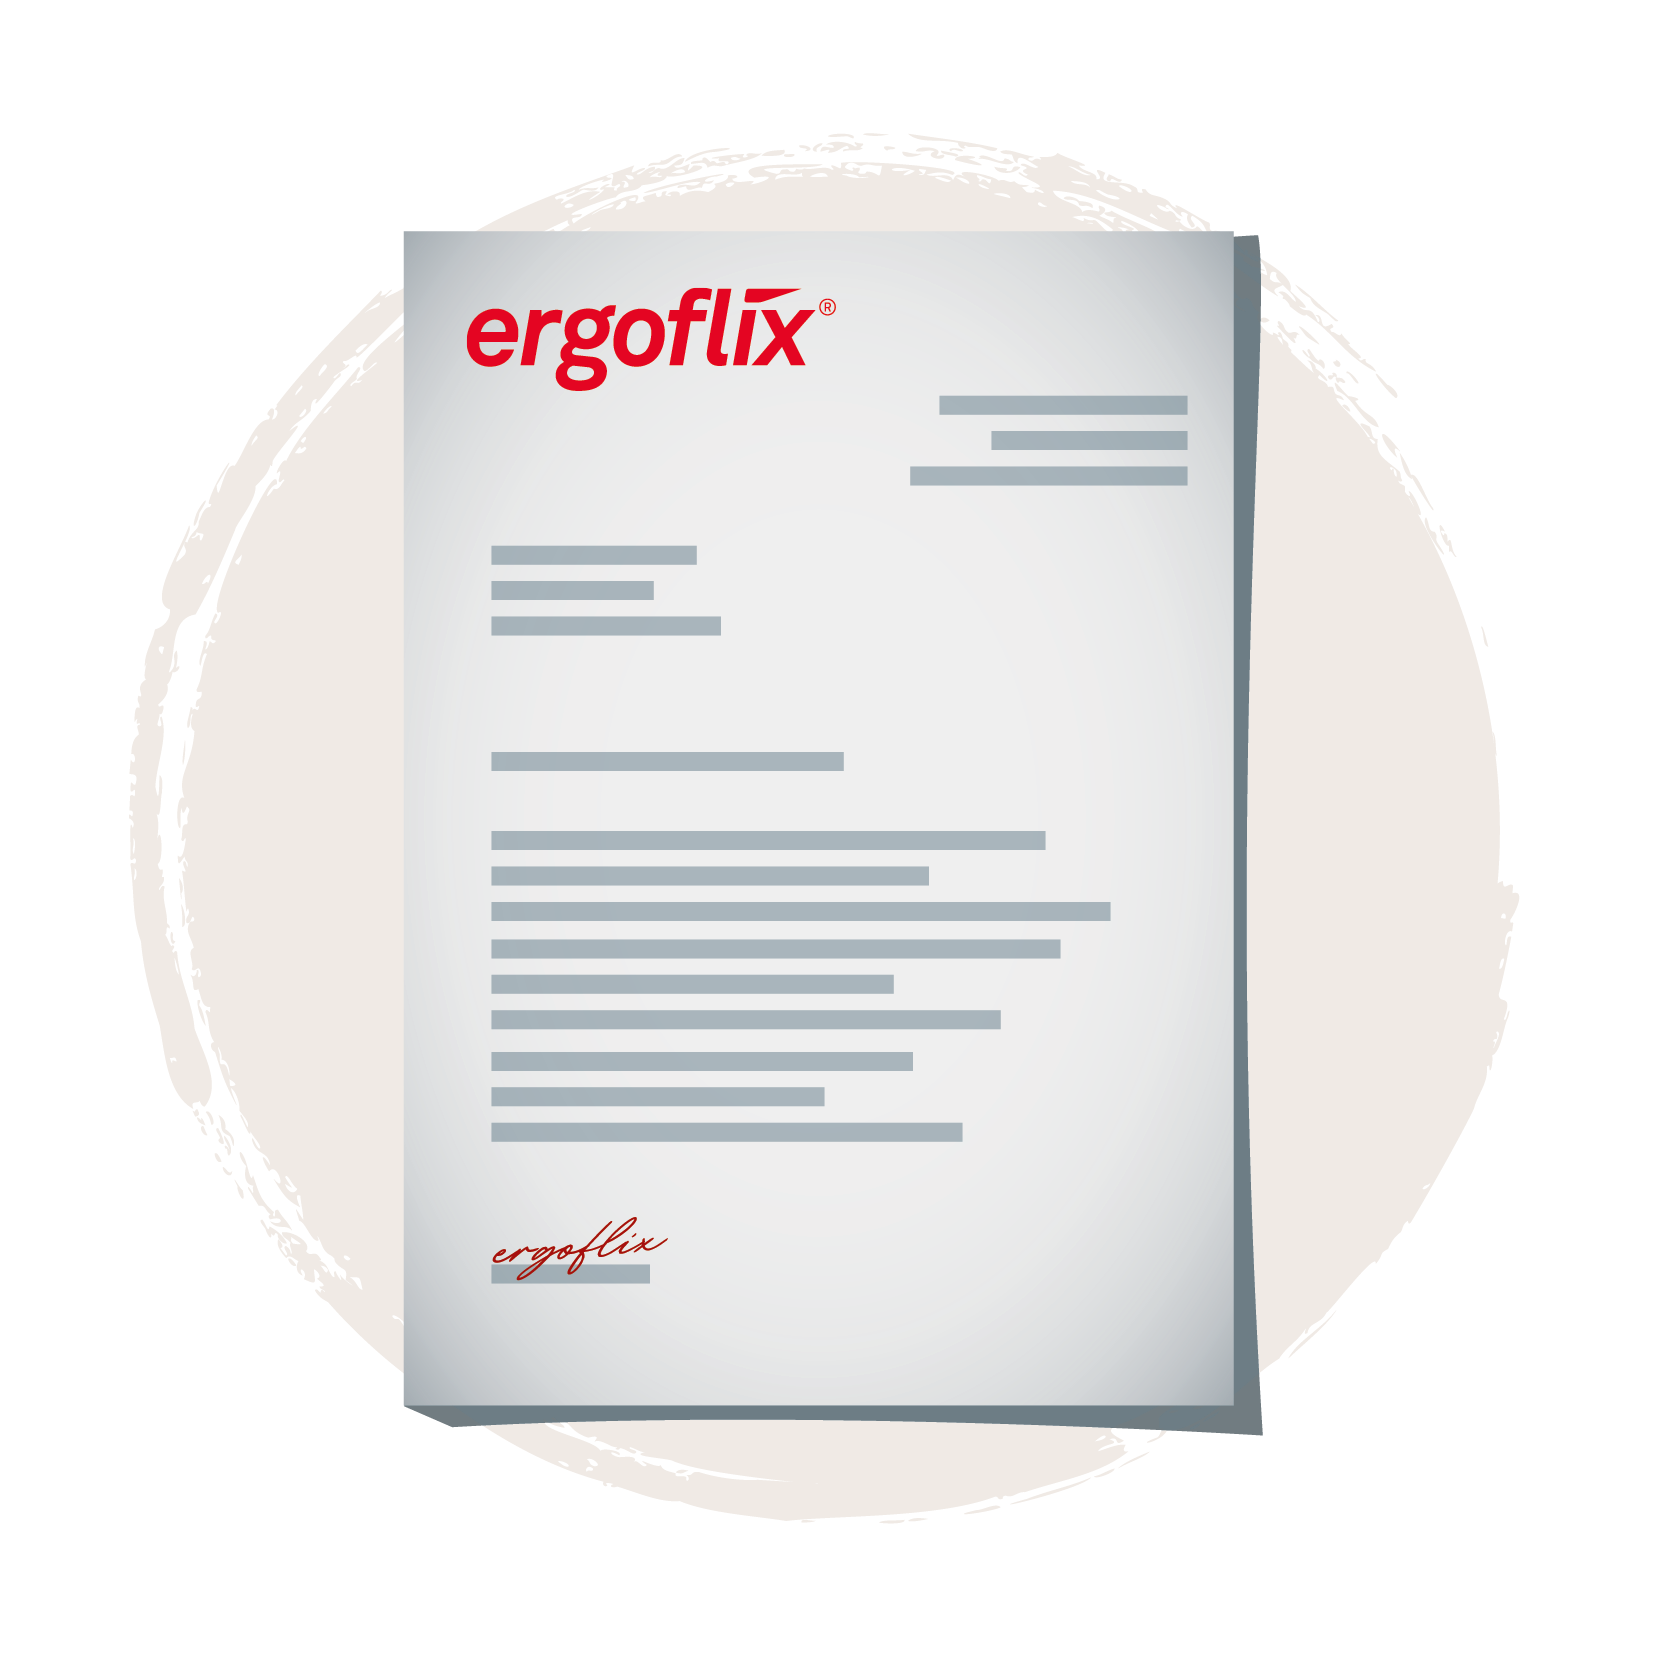 ergoflix  Icon Dokumente Guide Betriebsanleitungen